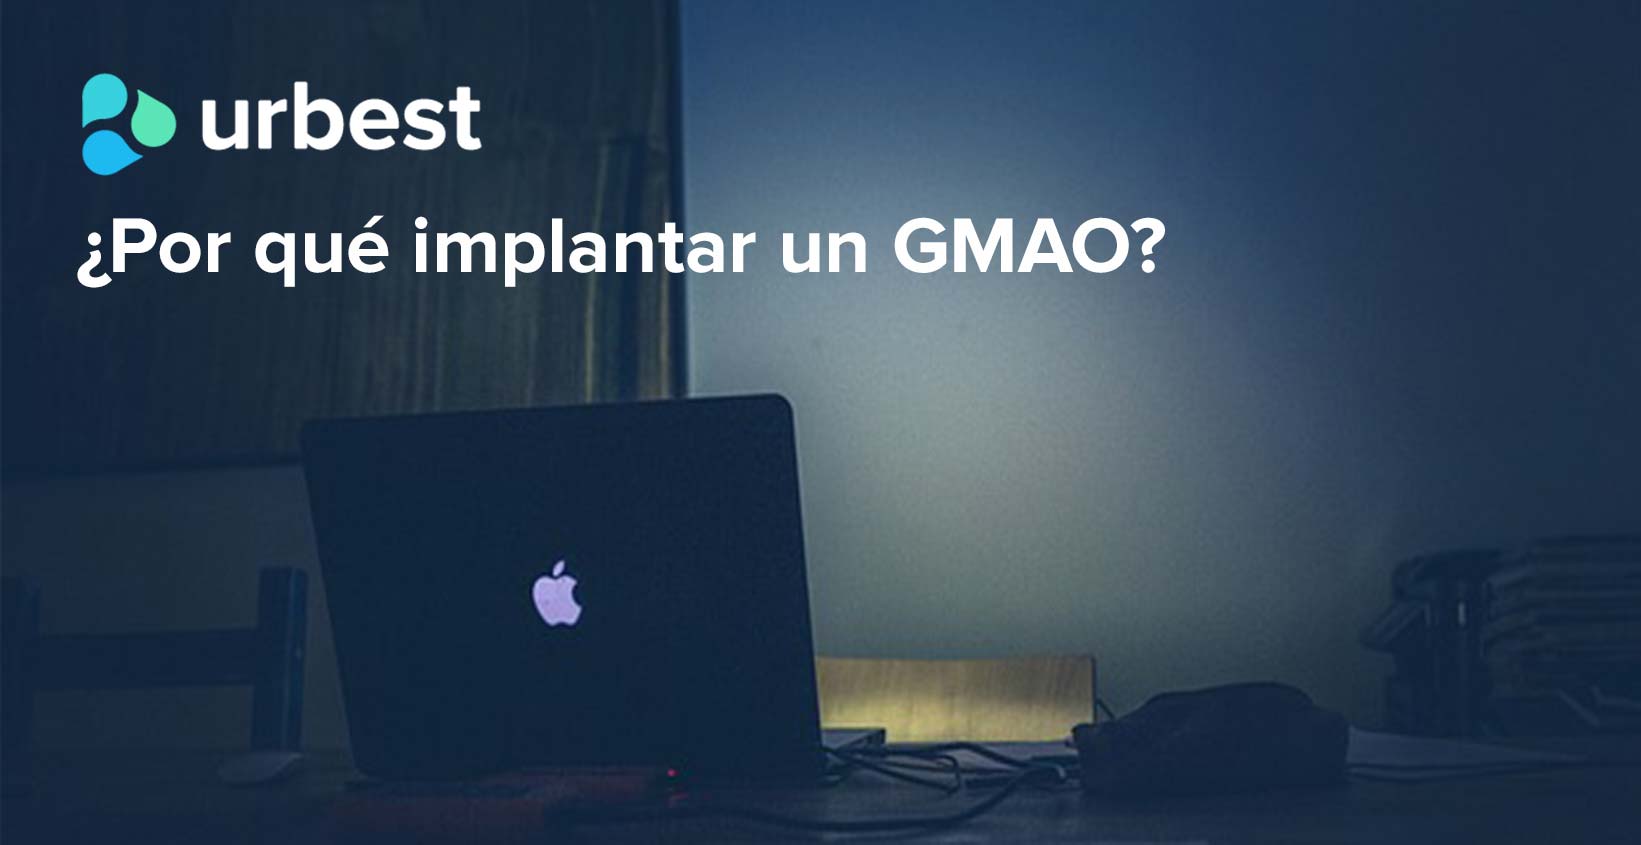 ¿Por qué implantar un GMAO?